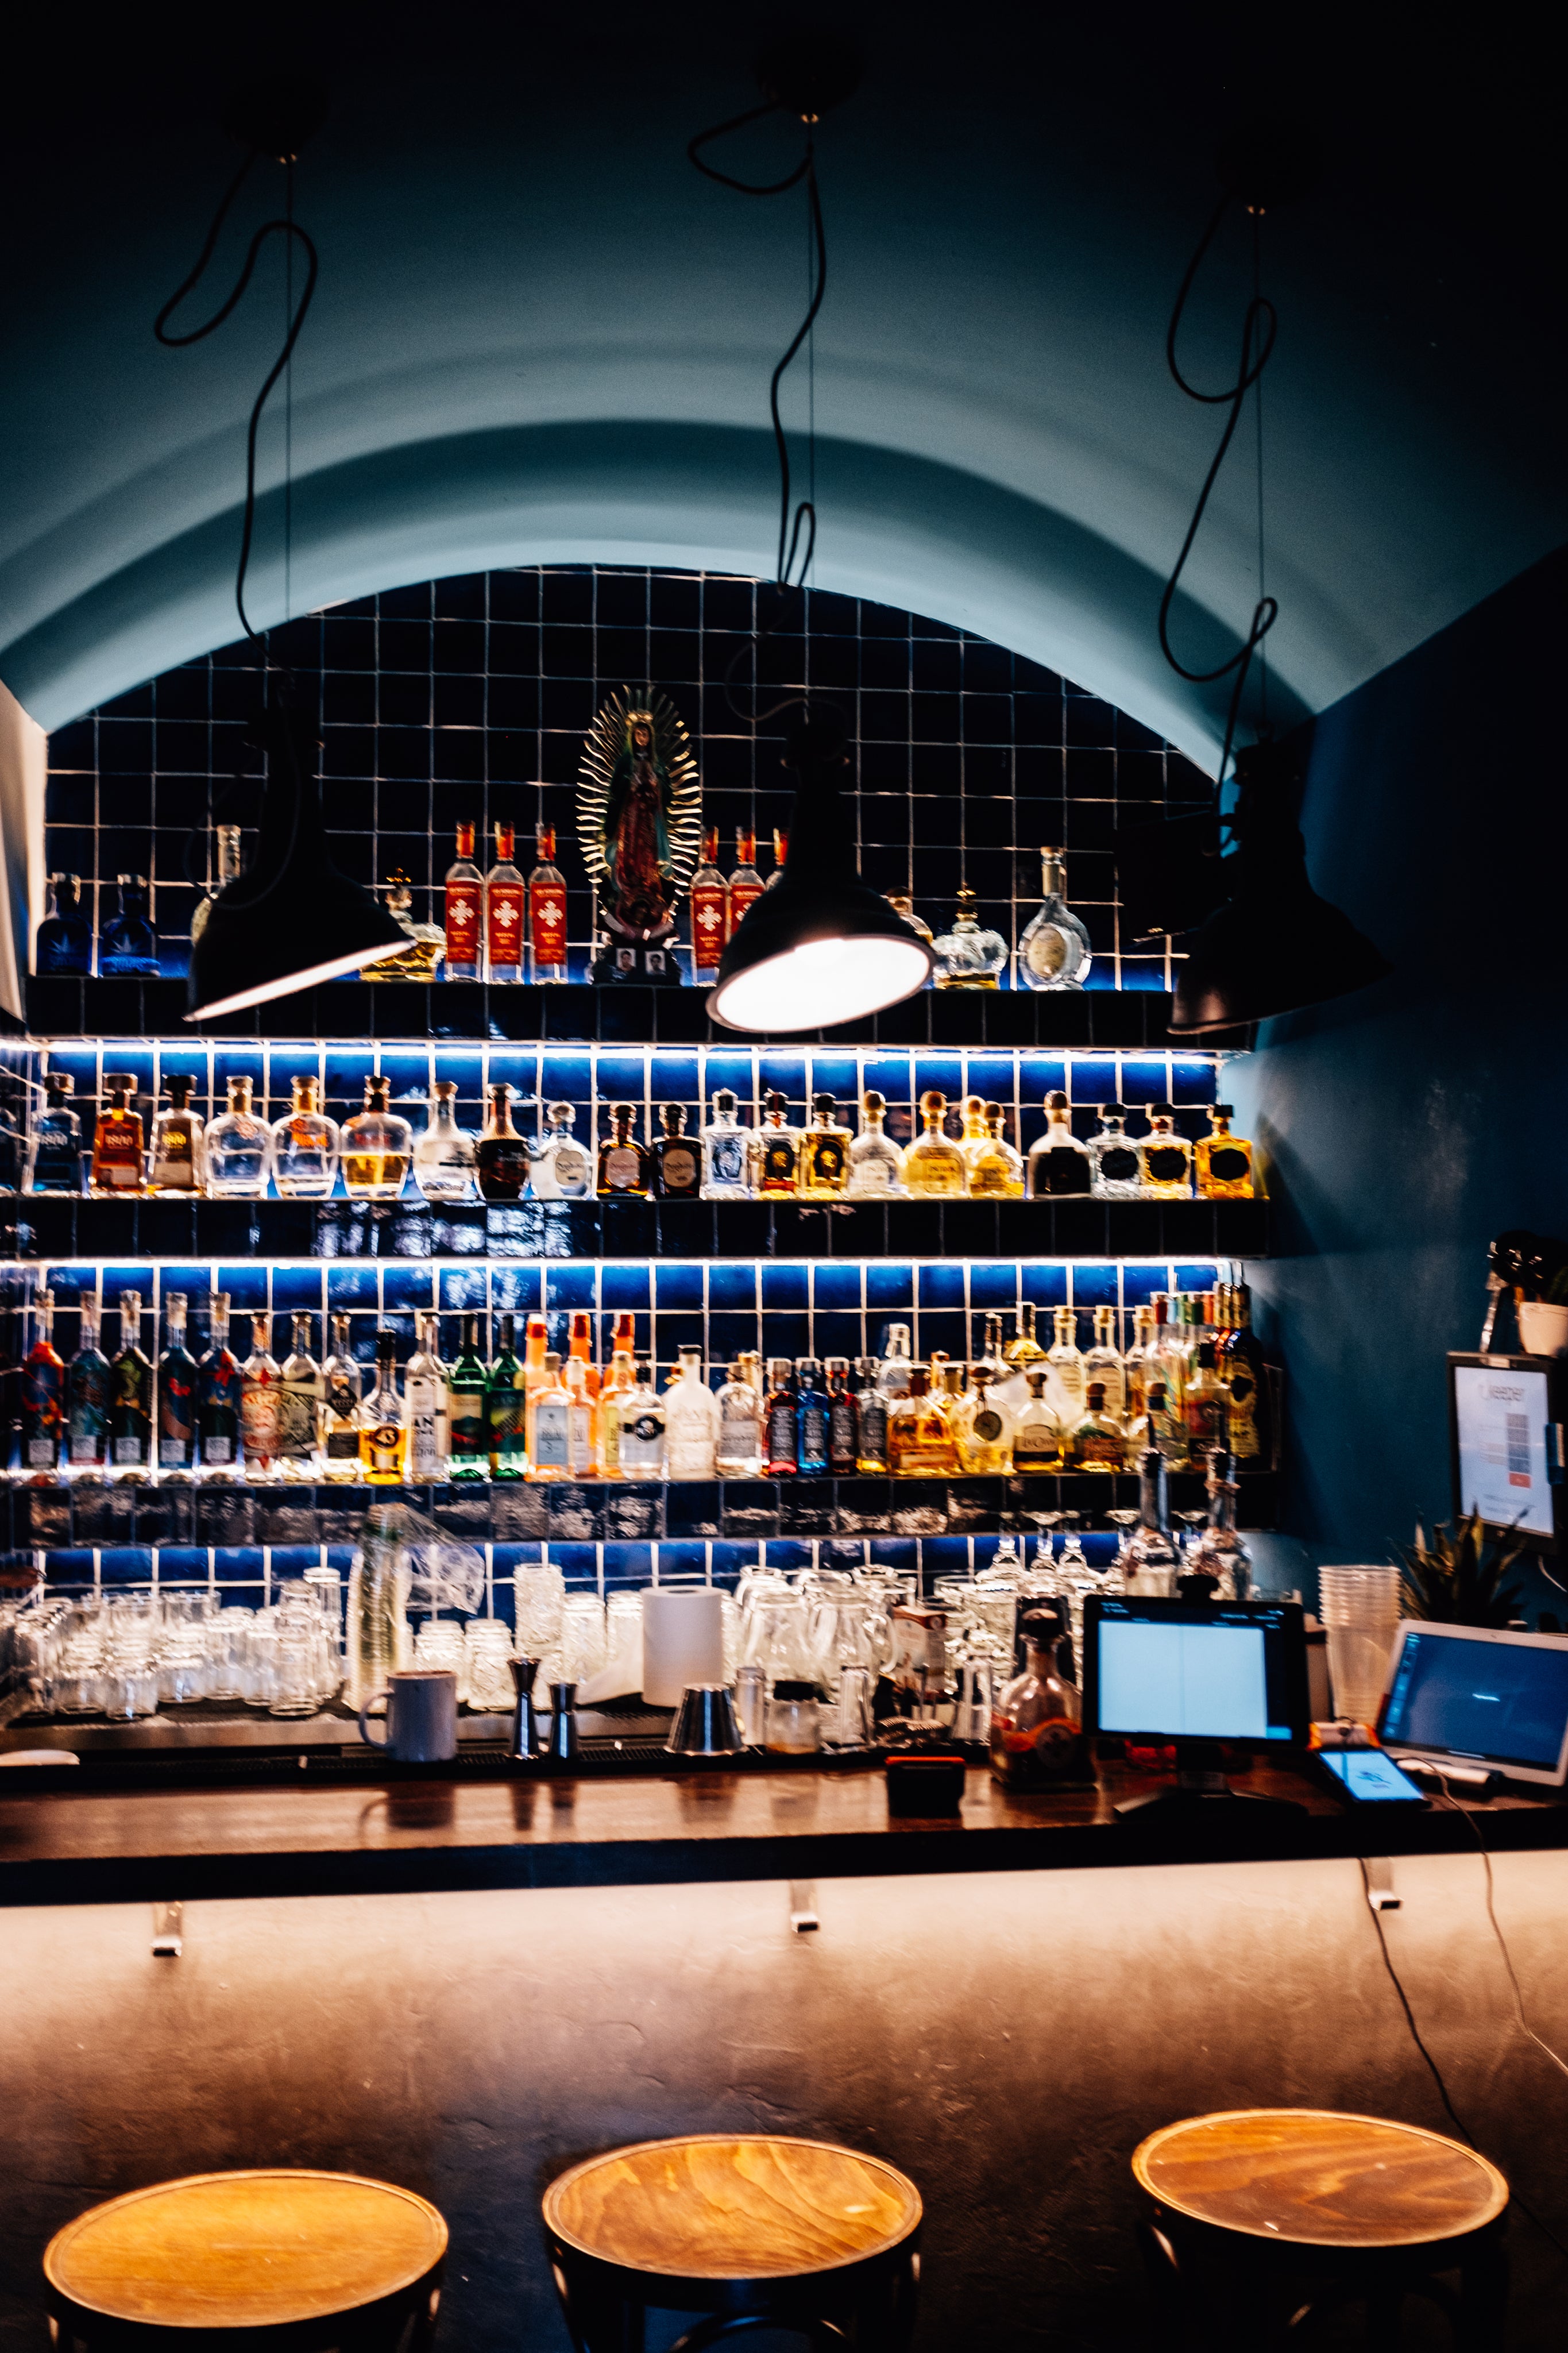 Cocktails on tap backlit bar